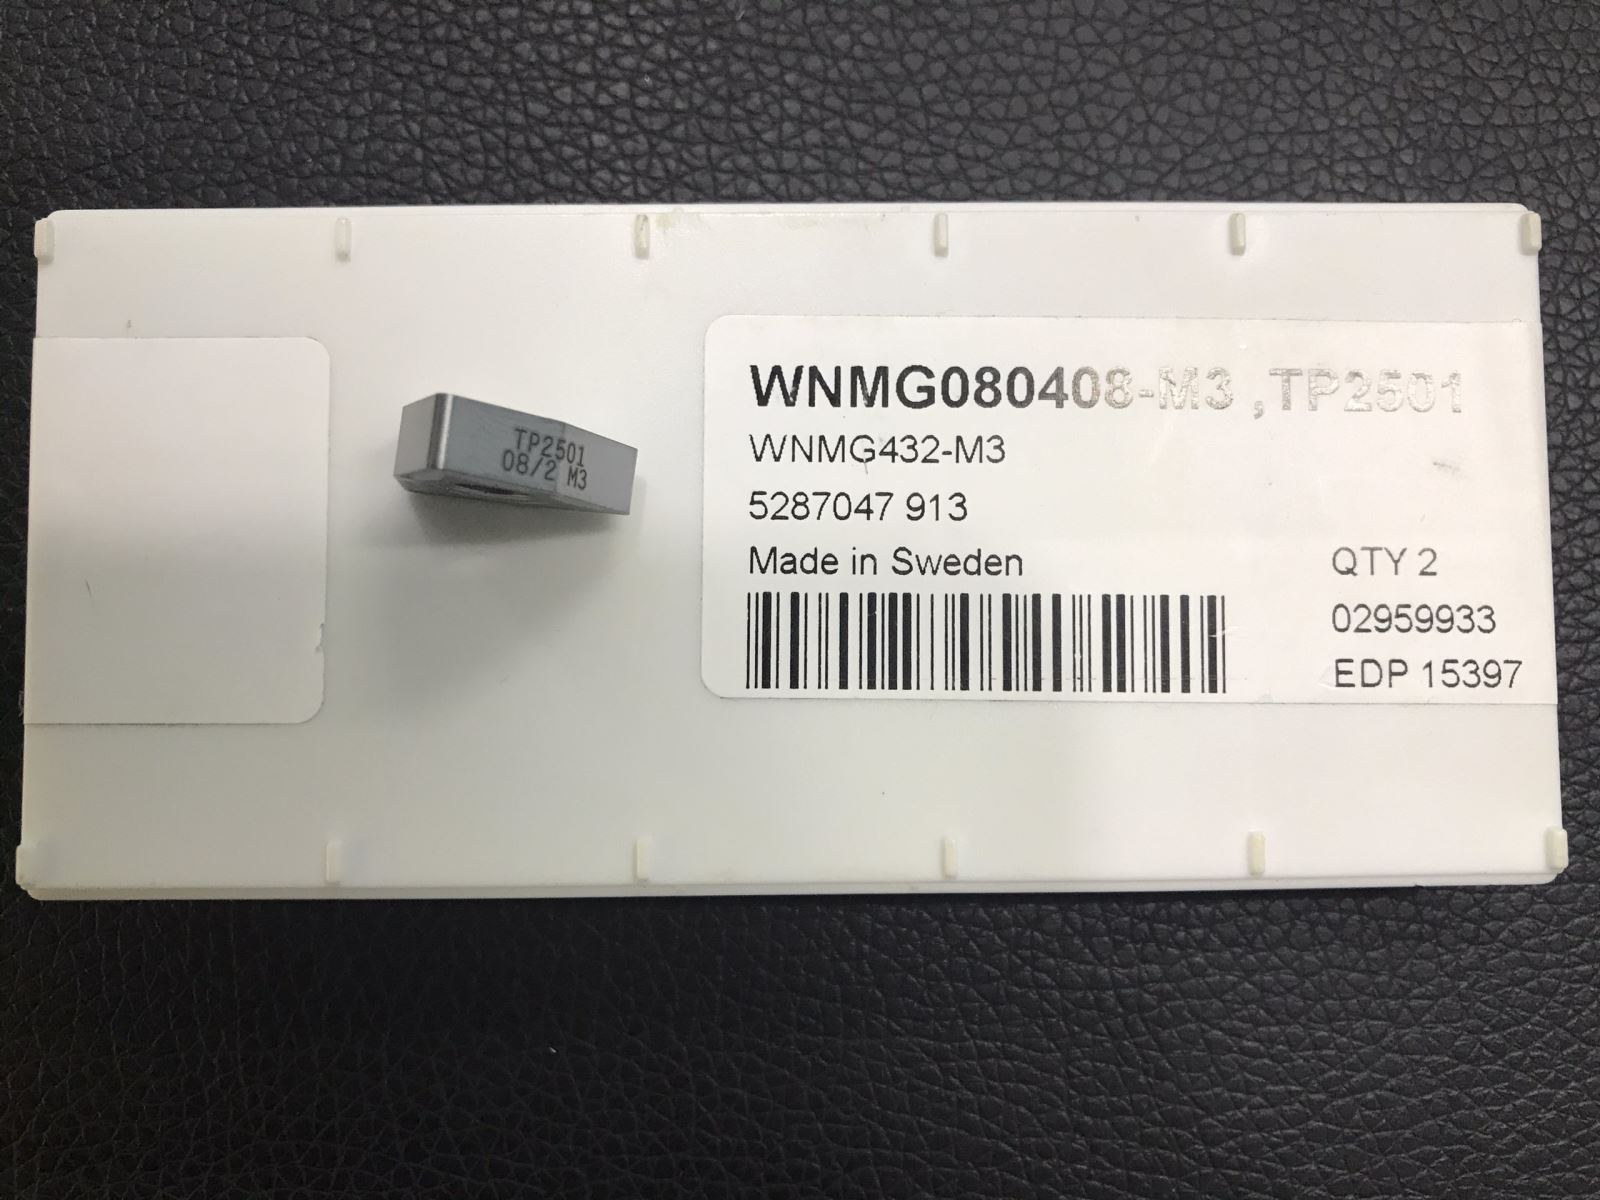 WNMG080408-M3,TP2501